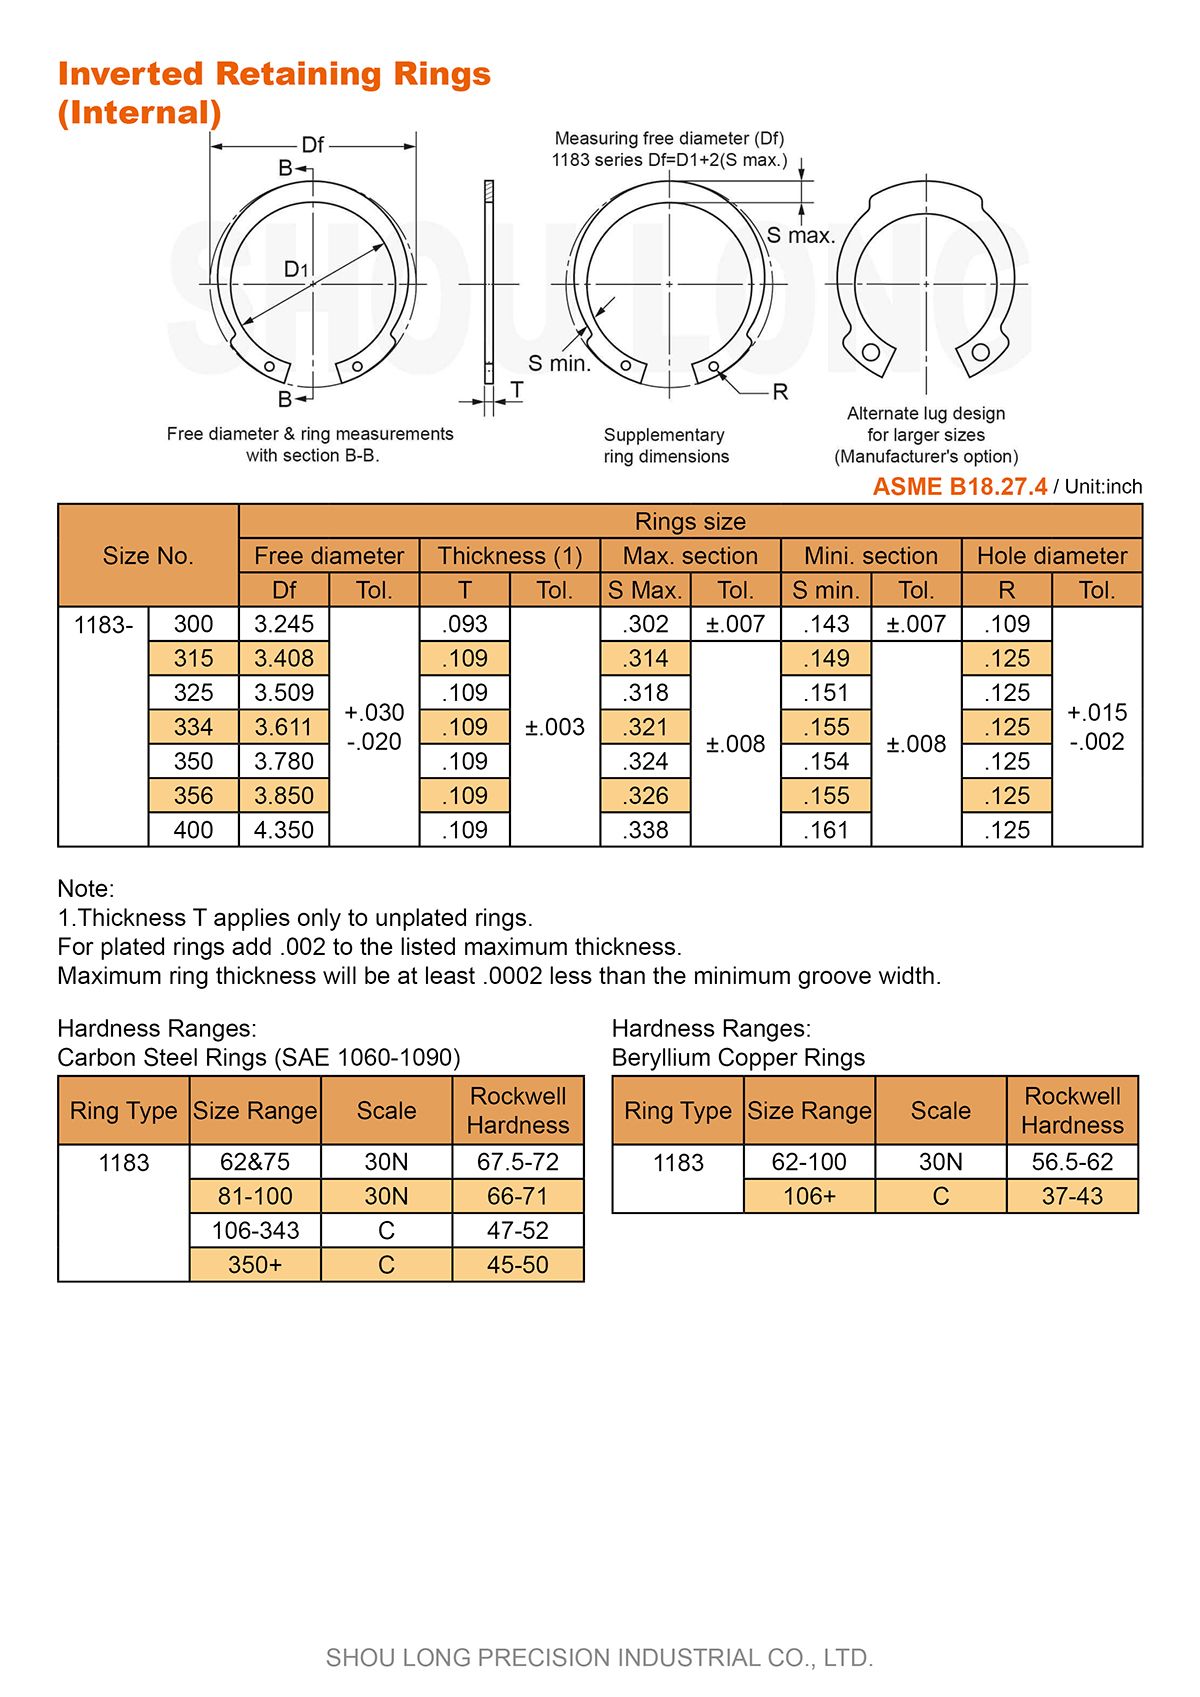 Спецификация дюймовых инвертированных удерживающих колец для отверстий ASME/ANSI B18.27.4 - 2